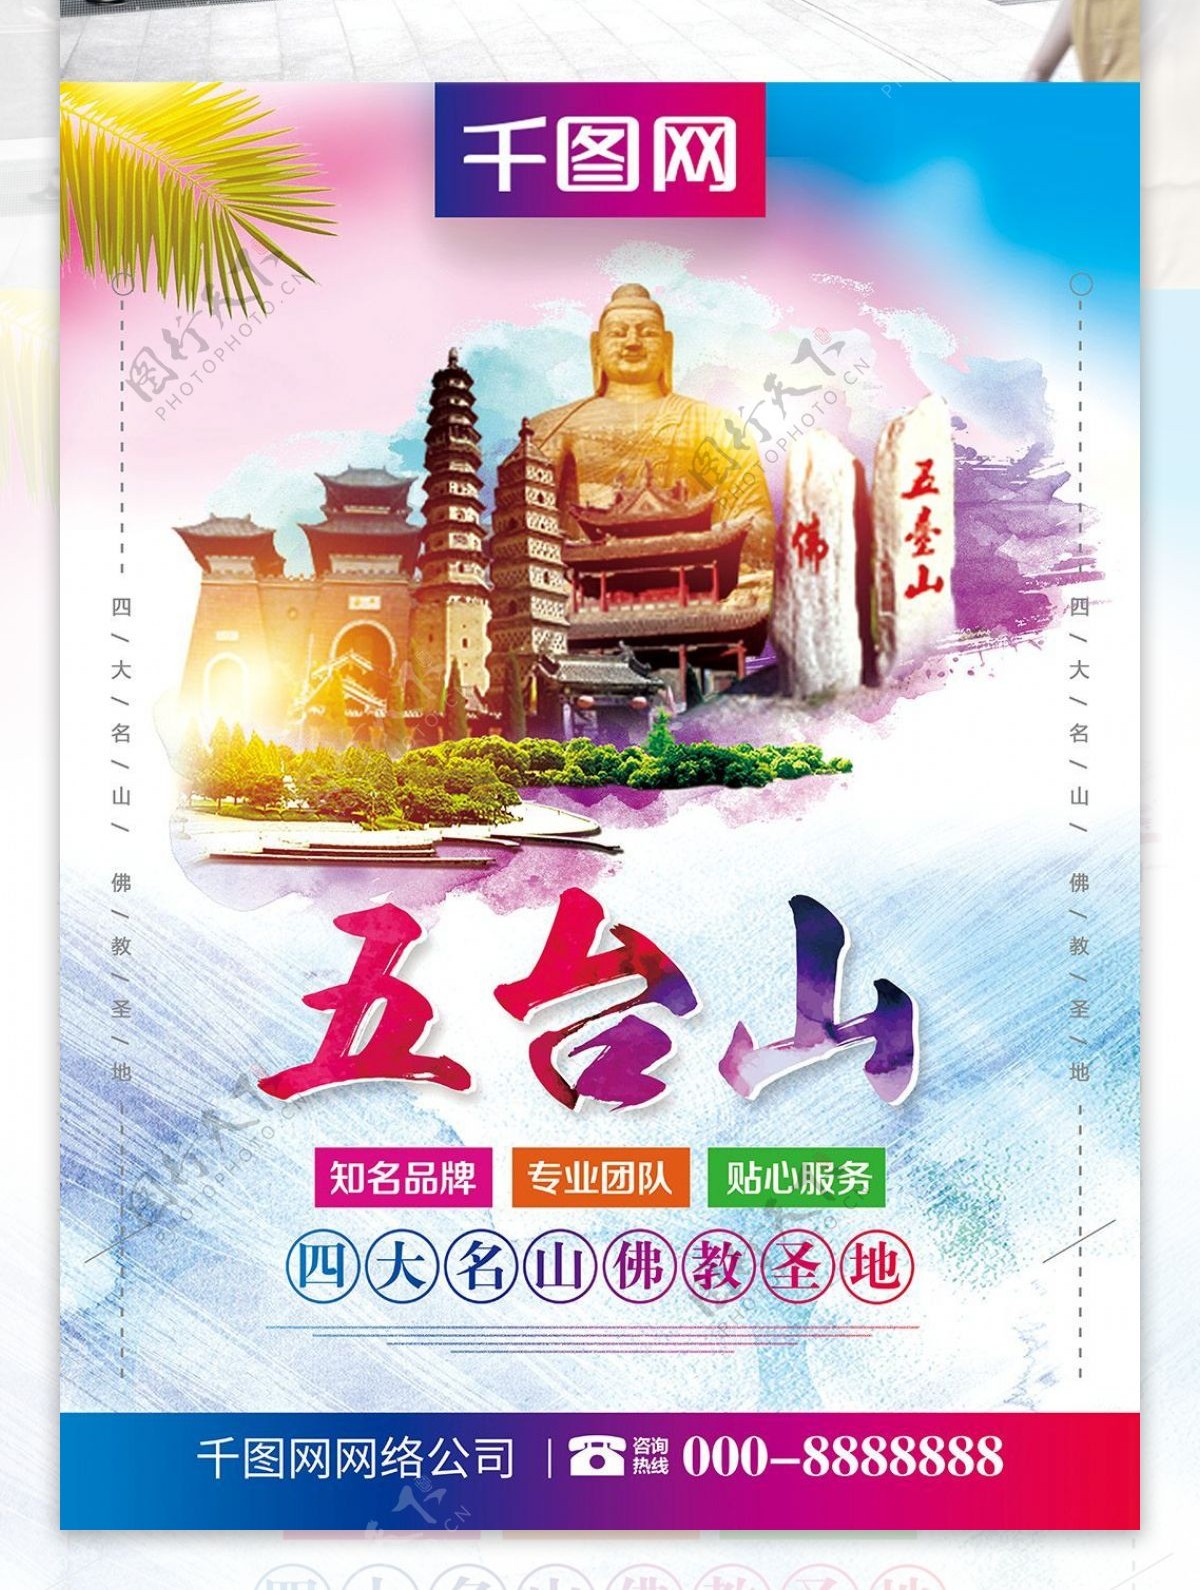 小青新五台山旅游旅行社宣传海报